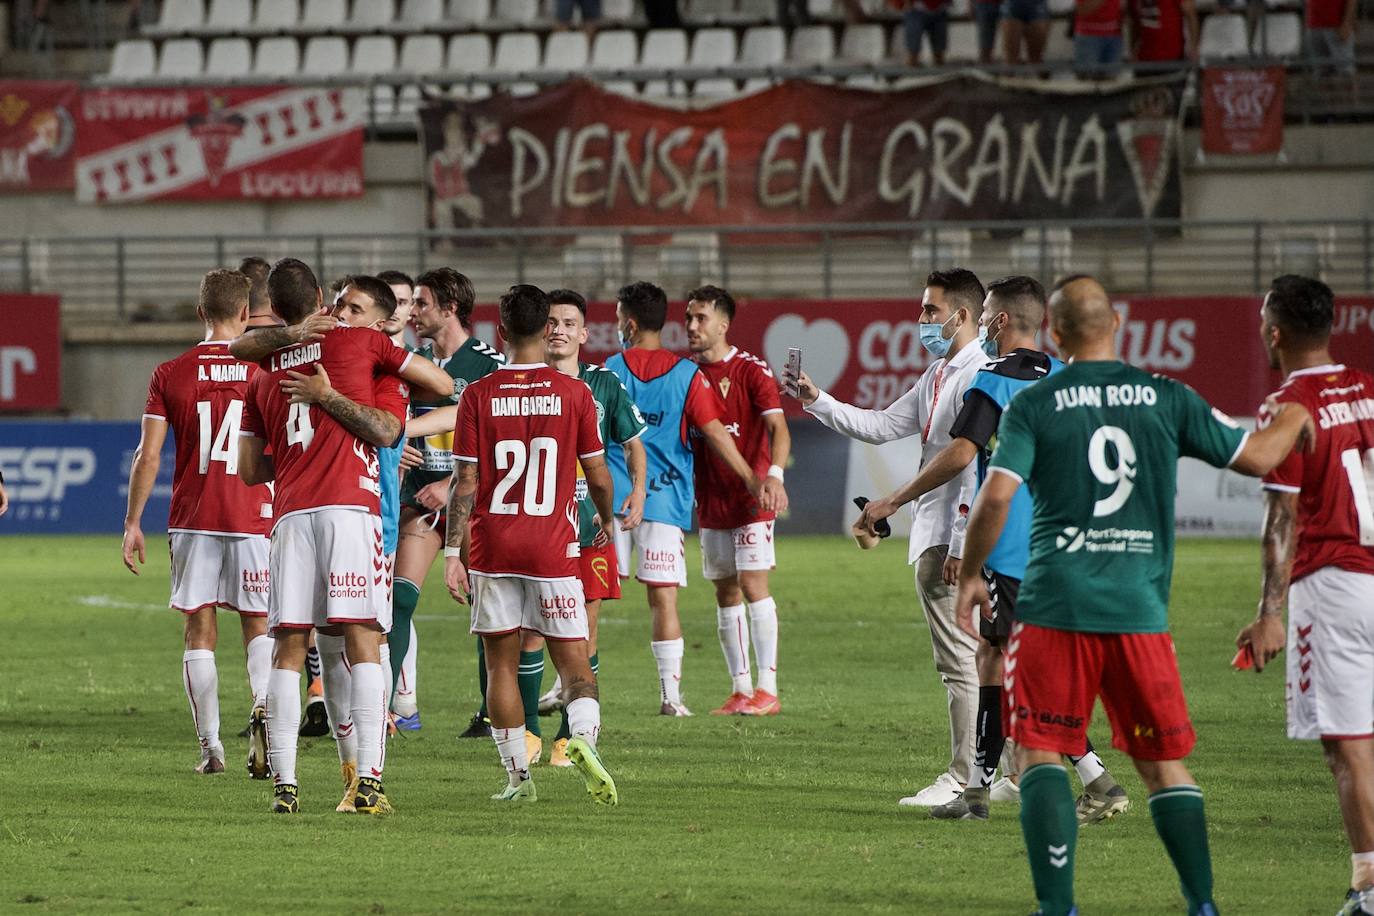 Fotos: La victoria del Real Murcia frente al Marchamalo, en imágenes